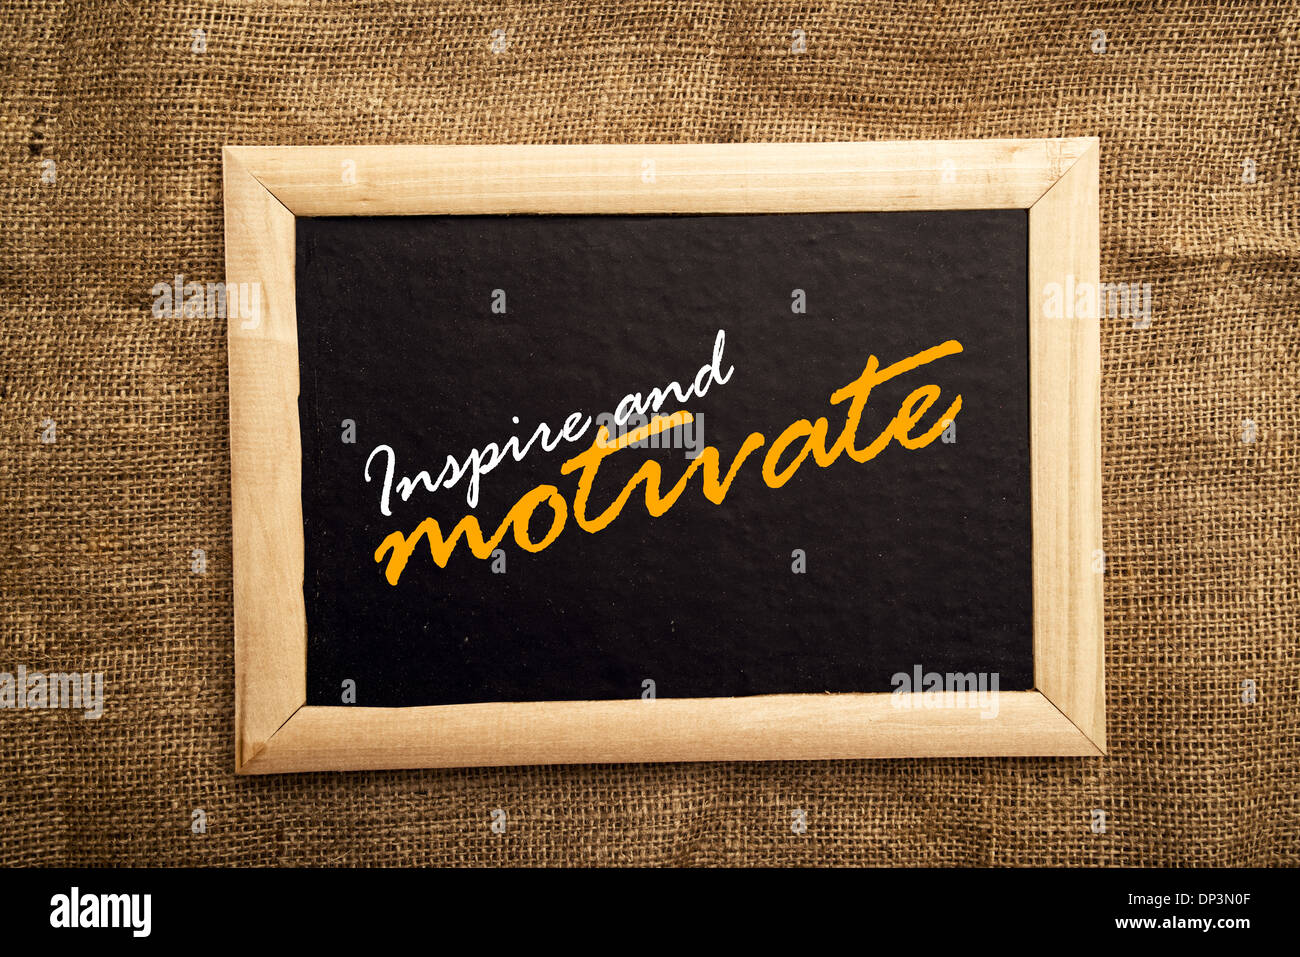 Ispirare e motivare il messaggio sulla lavagna. Foto Stock